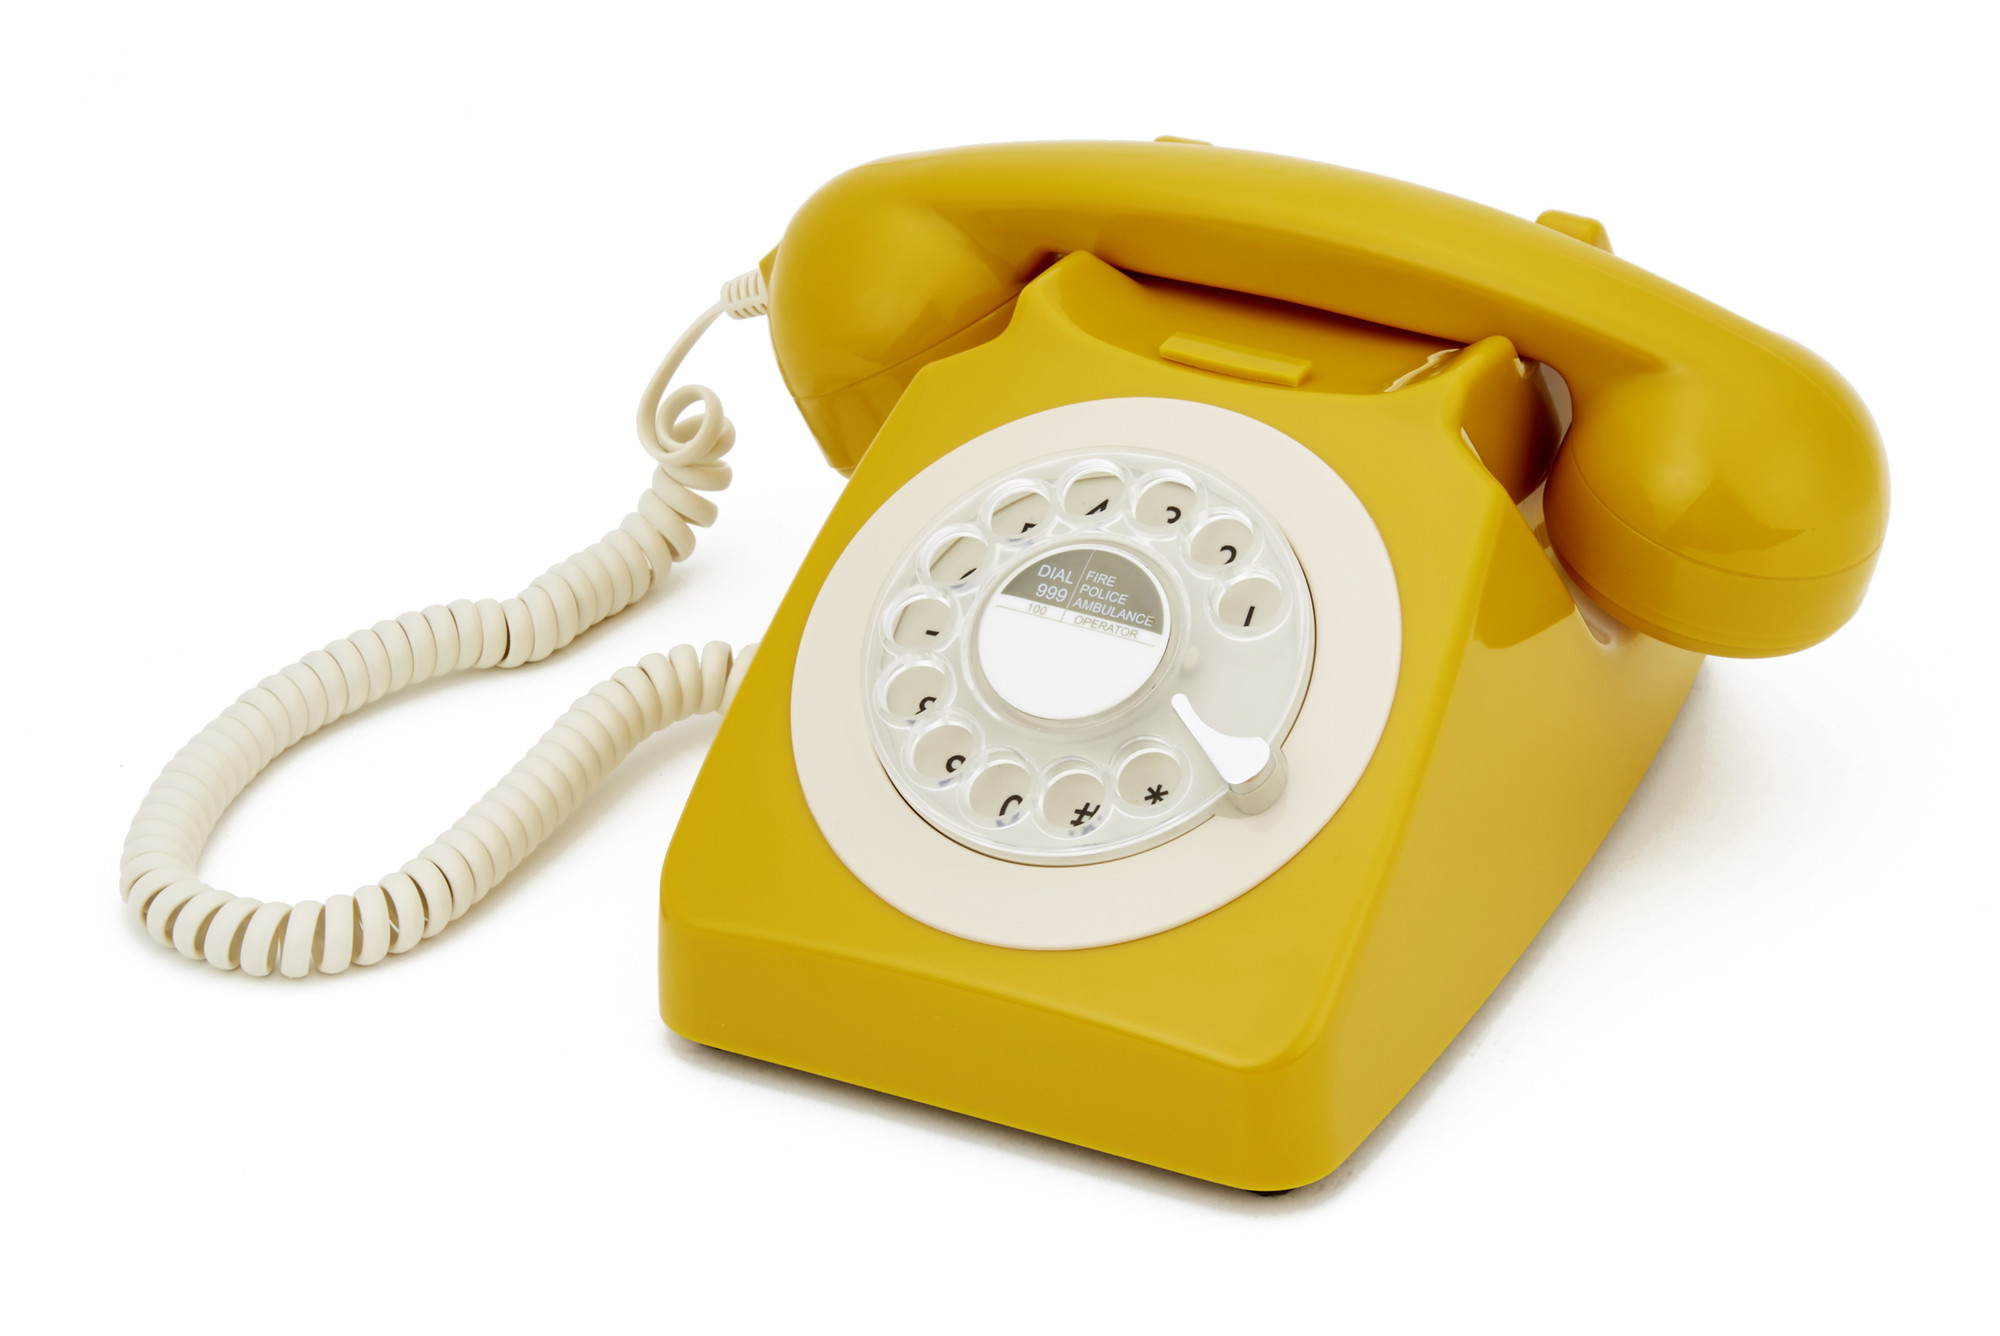 GPO RETRO GPO 746 ROTARY TELEPHONE - MUSTARD